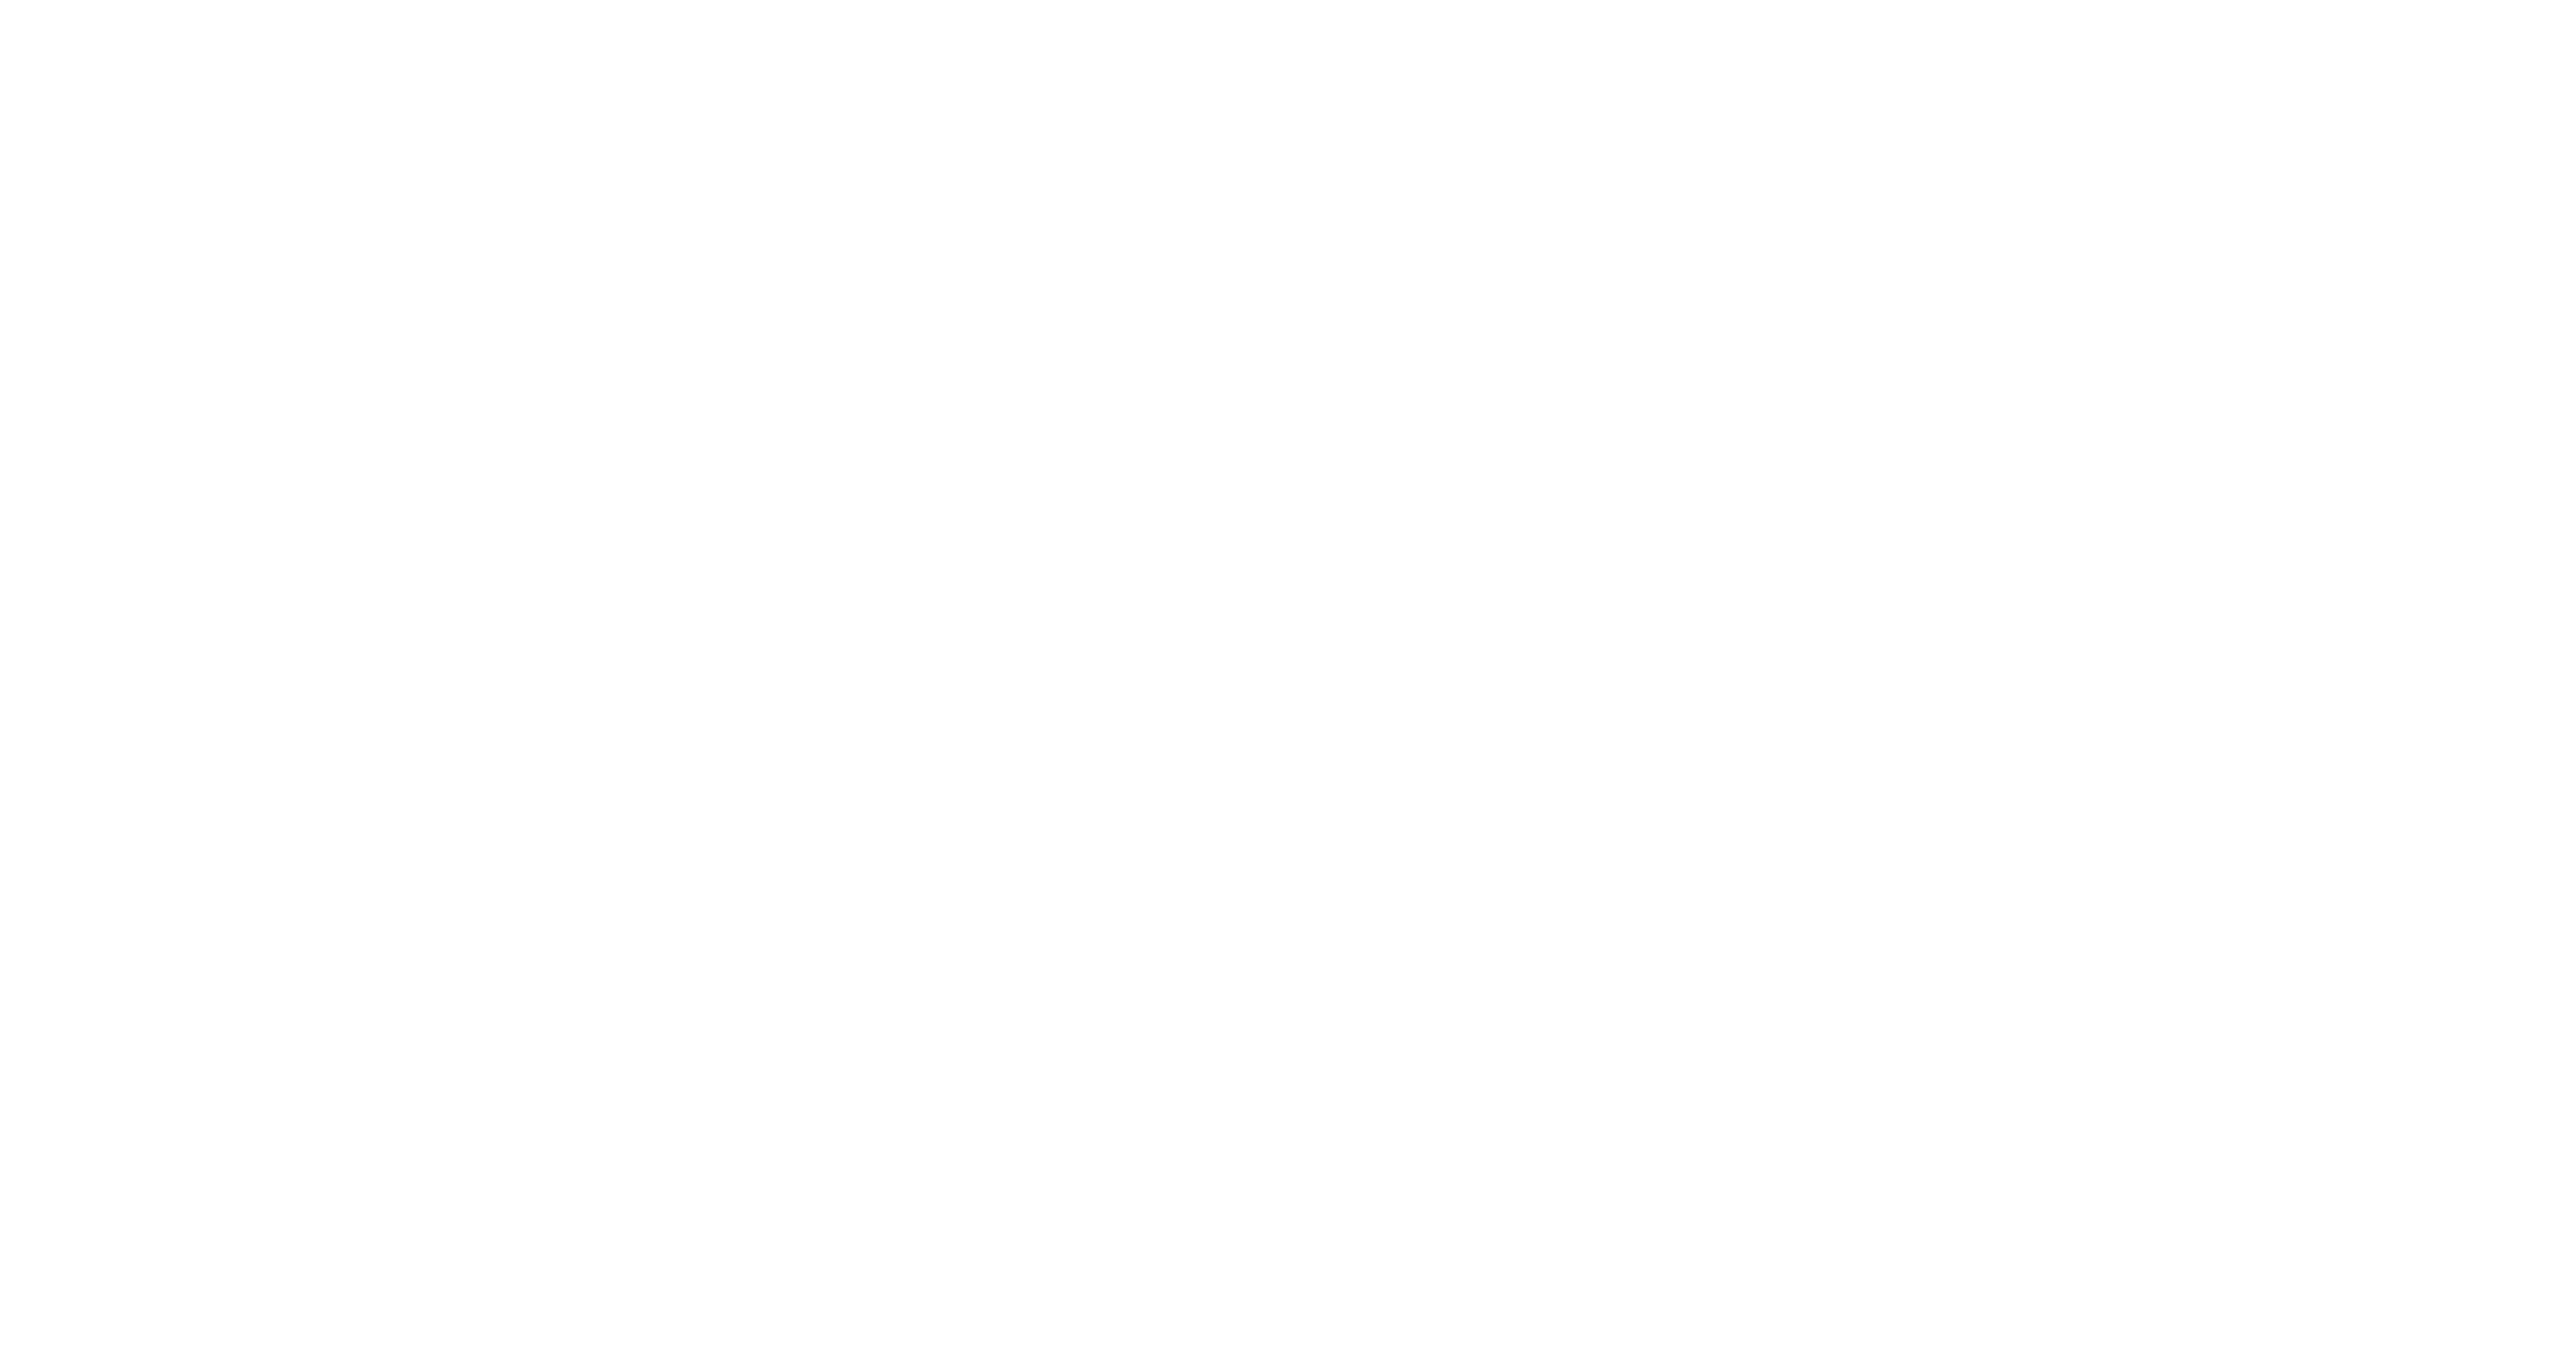 Escudo de la Universidad Nacional de Colombia